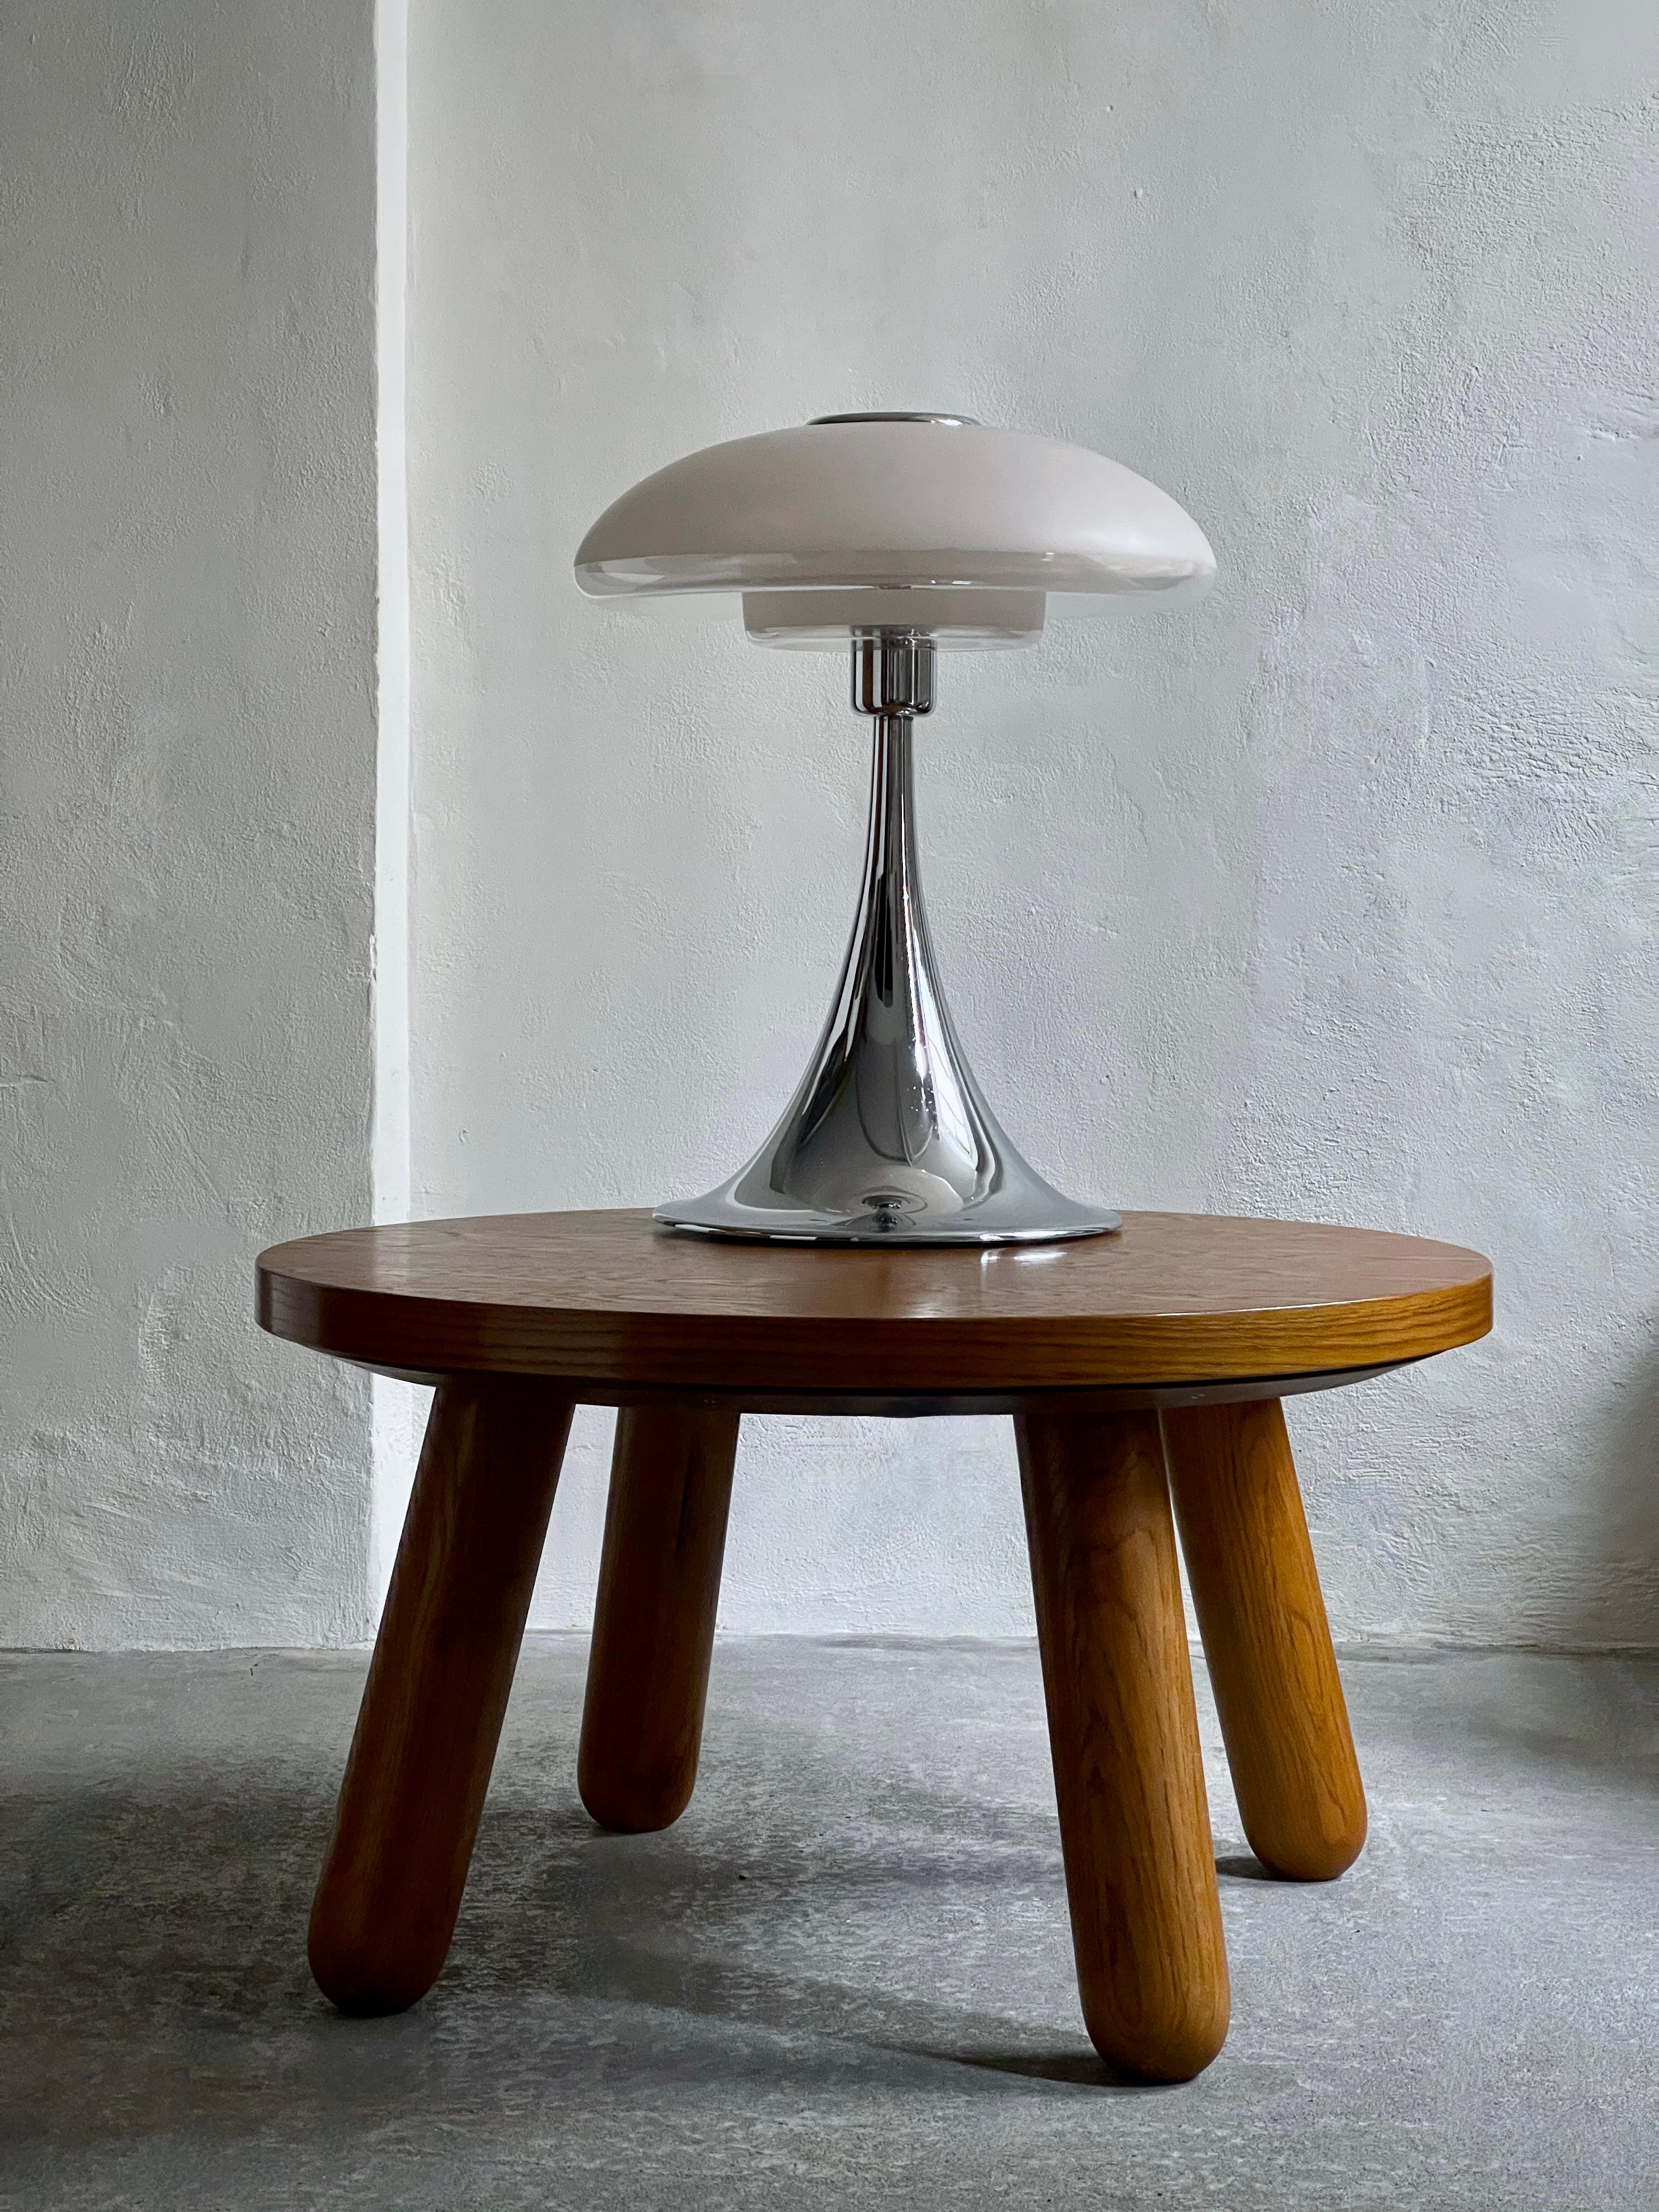 Die seltene und große Verner Panton VP Europa Tischleuchte aus den 1970er Jahren ist ein Stück Designgeschichte, das Form und Funktion nahtlos miteinander verbindet. Ihr Schirm aus Opalglas, der verchromte Sockel und die Ästhetik der Raumfahrt